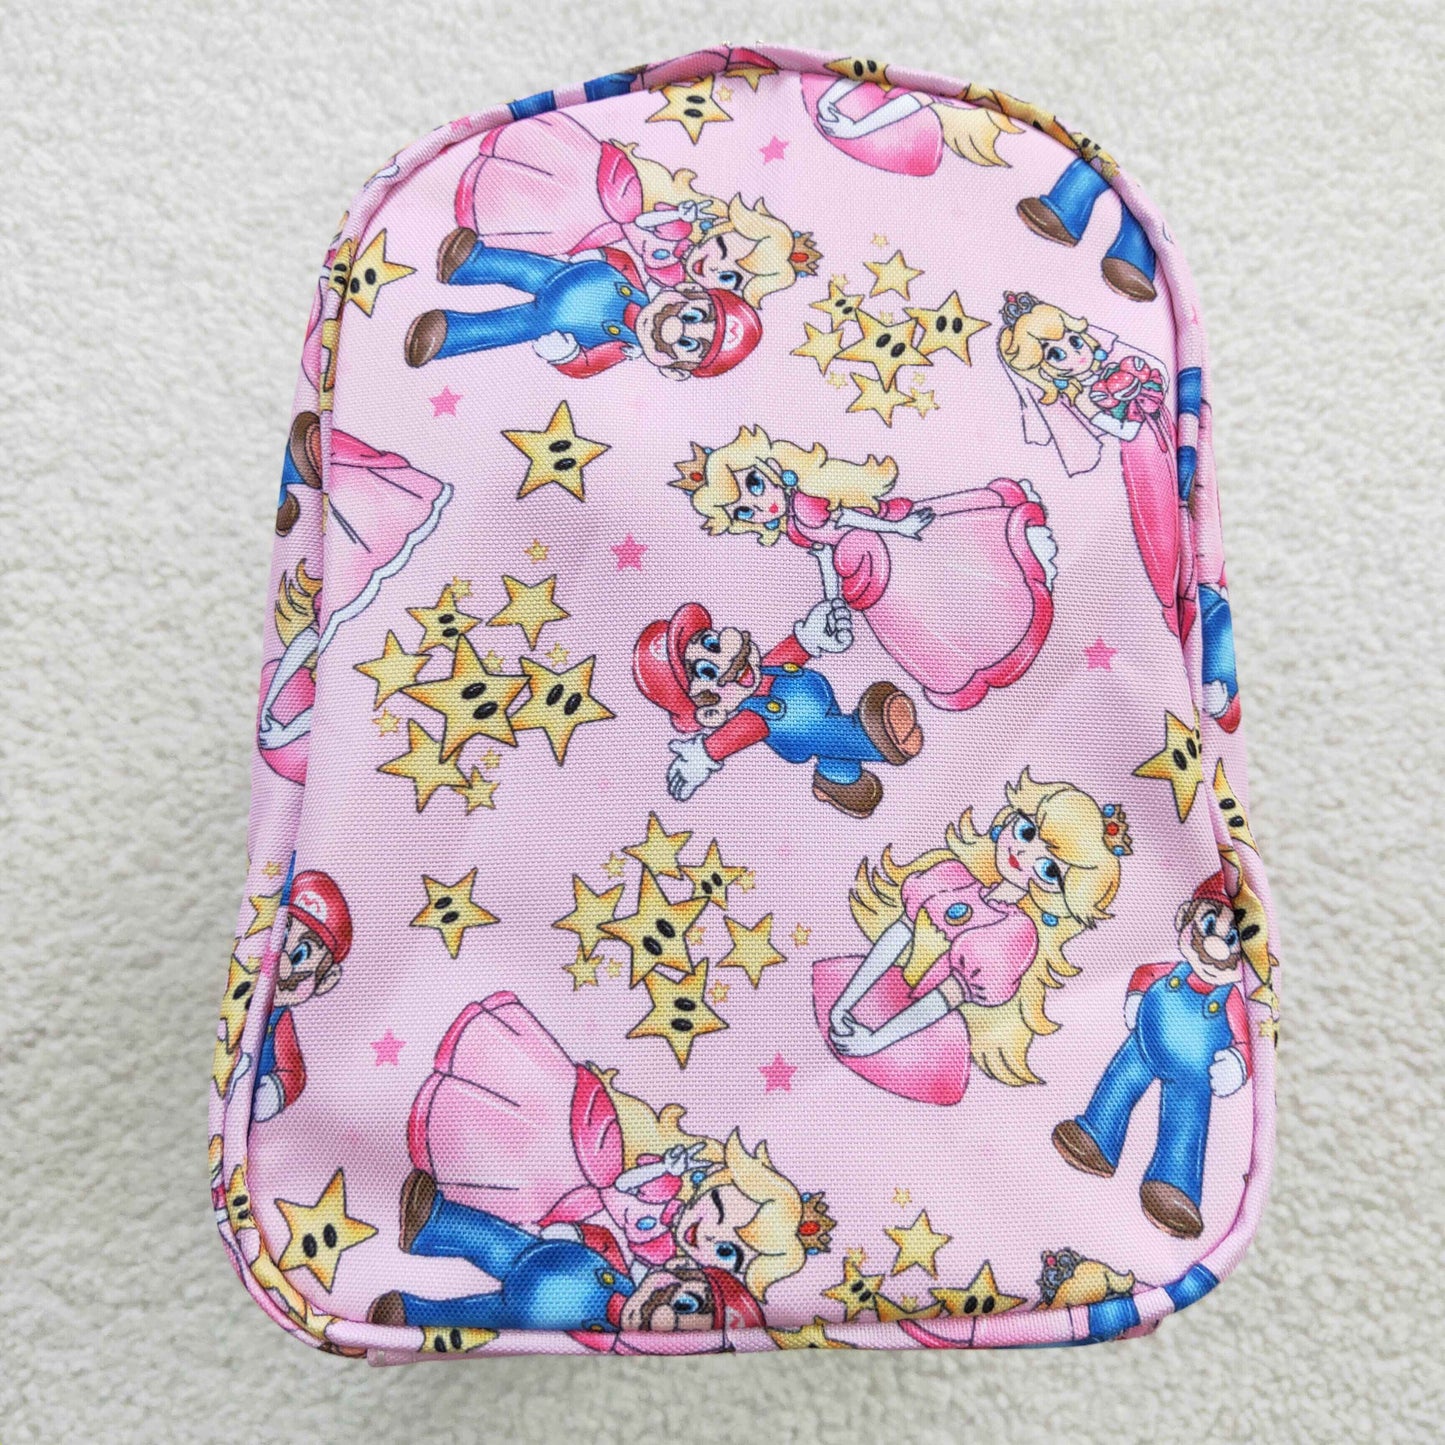 wholesale princess cartoon duffel bag